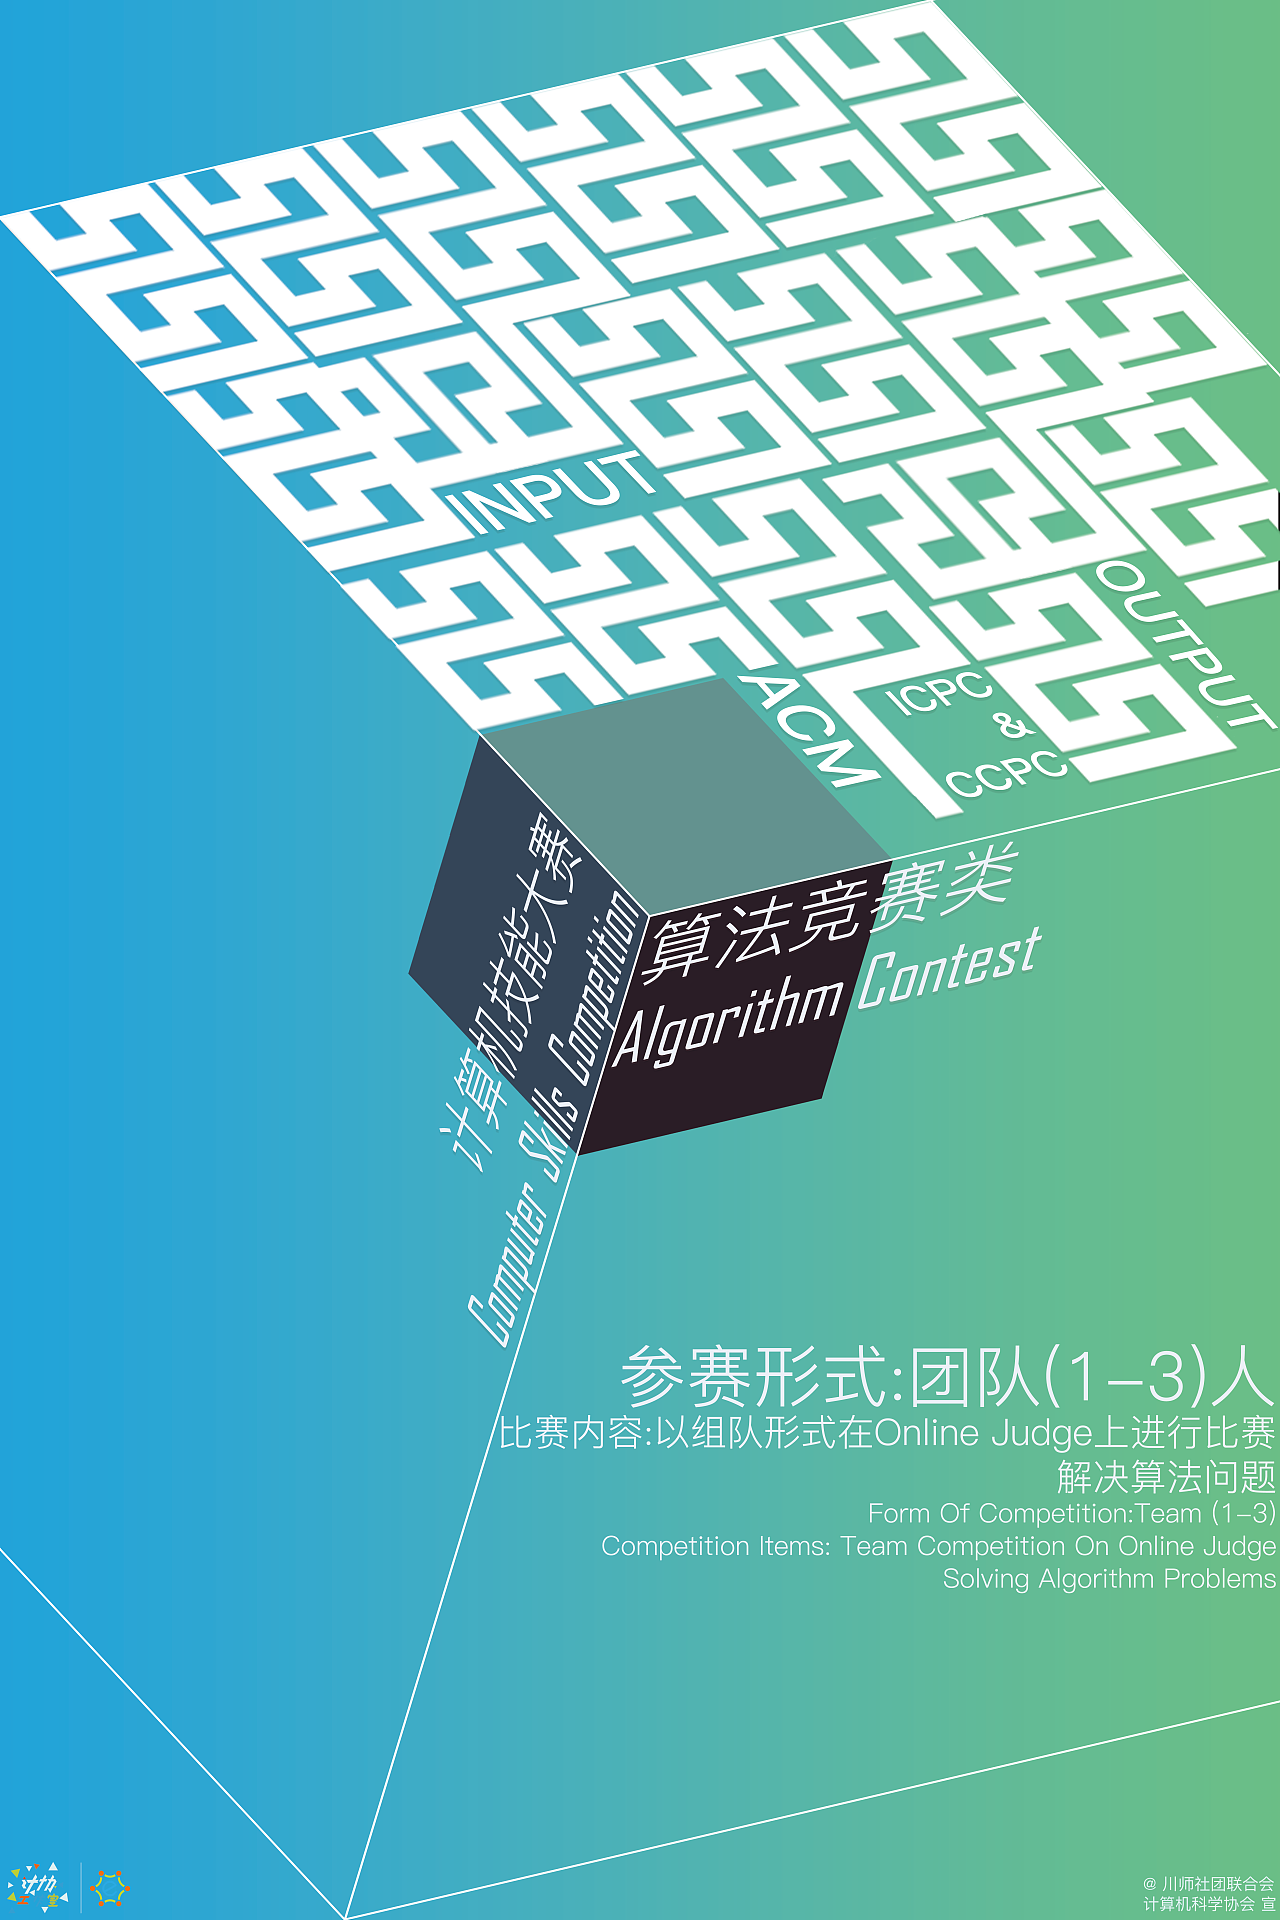 四川师范大学 第十四届计算机技能大赛 宣传海报设计